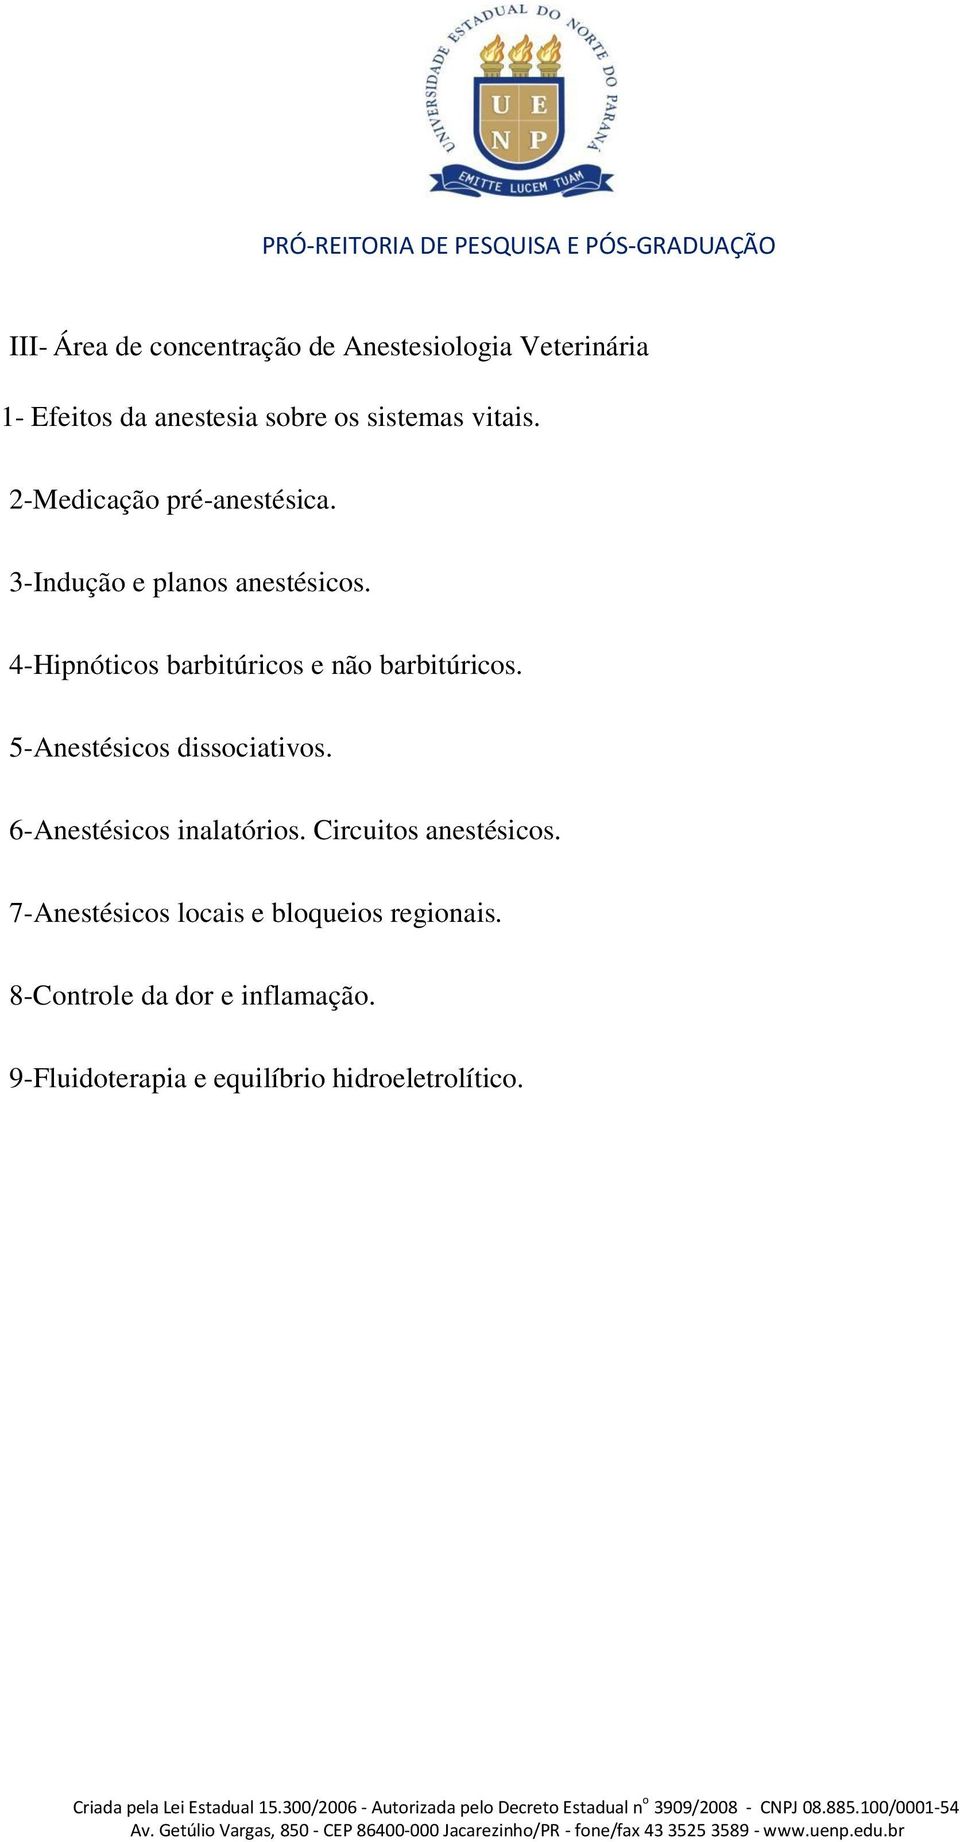 4-Hipnóticos barbitúricos e não barbitúricos. 5-Anestésicos dissociativos. 6-Anestésicos inalatórios.